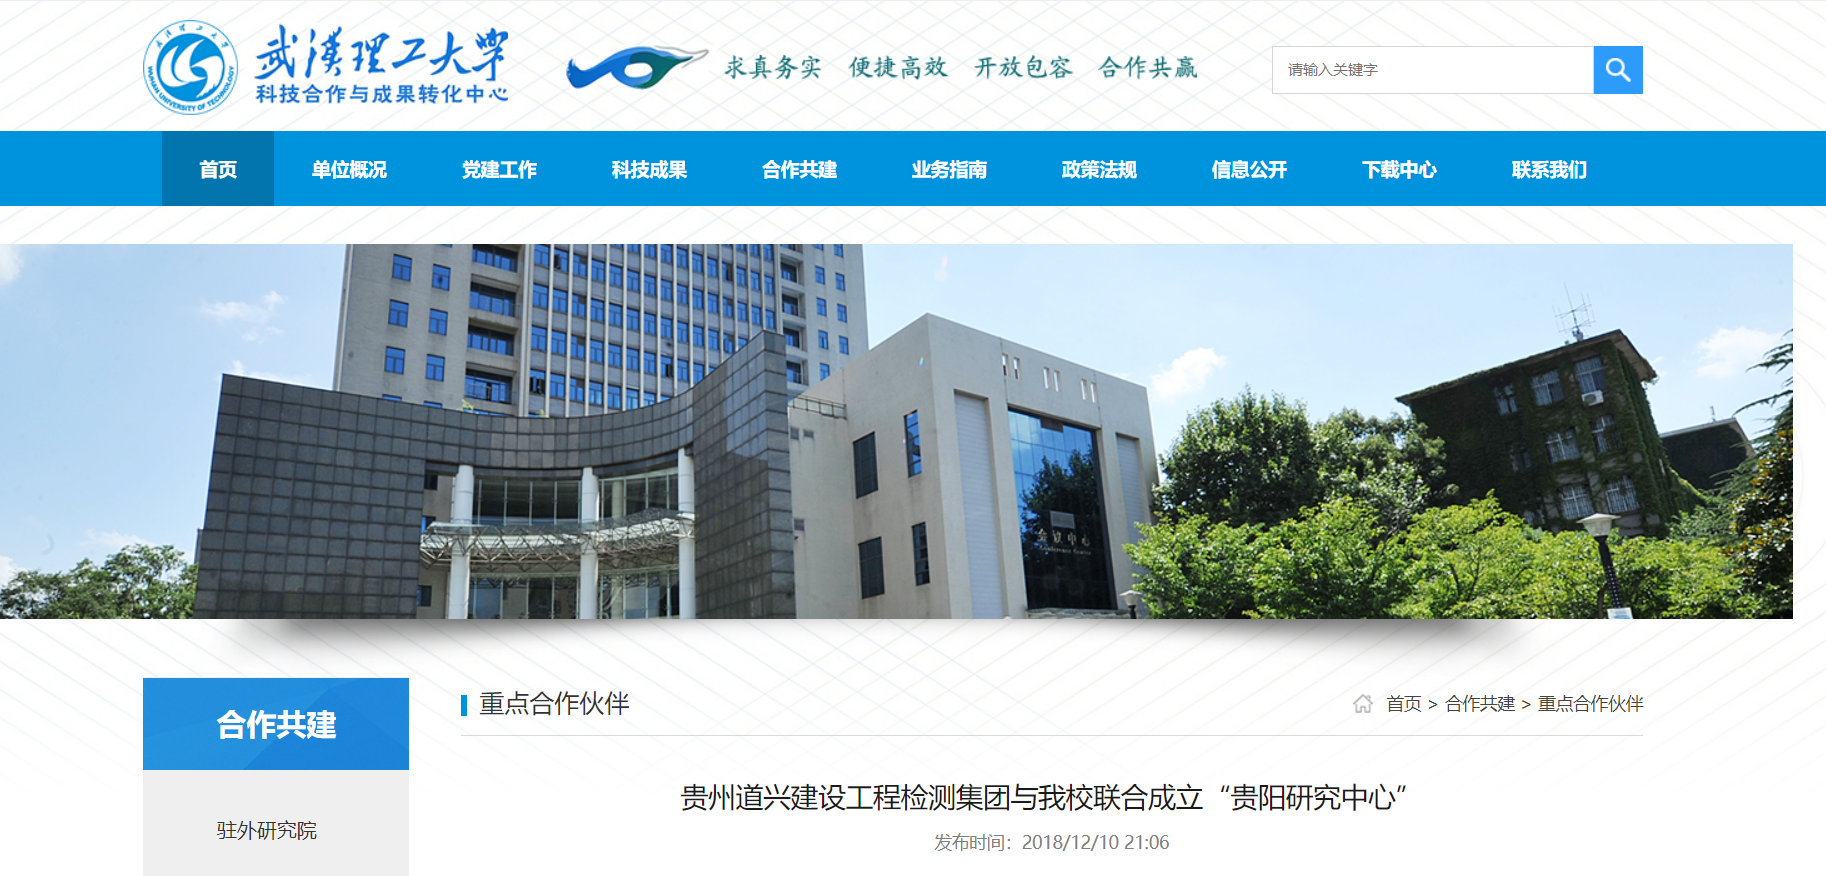 贵州道兴建设工程检测集团与武汉理工大学联合成立“贵阳研究中心”